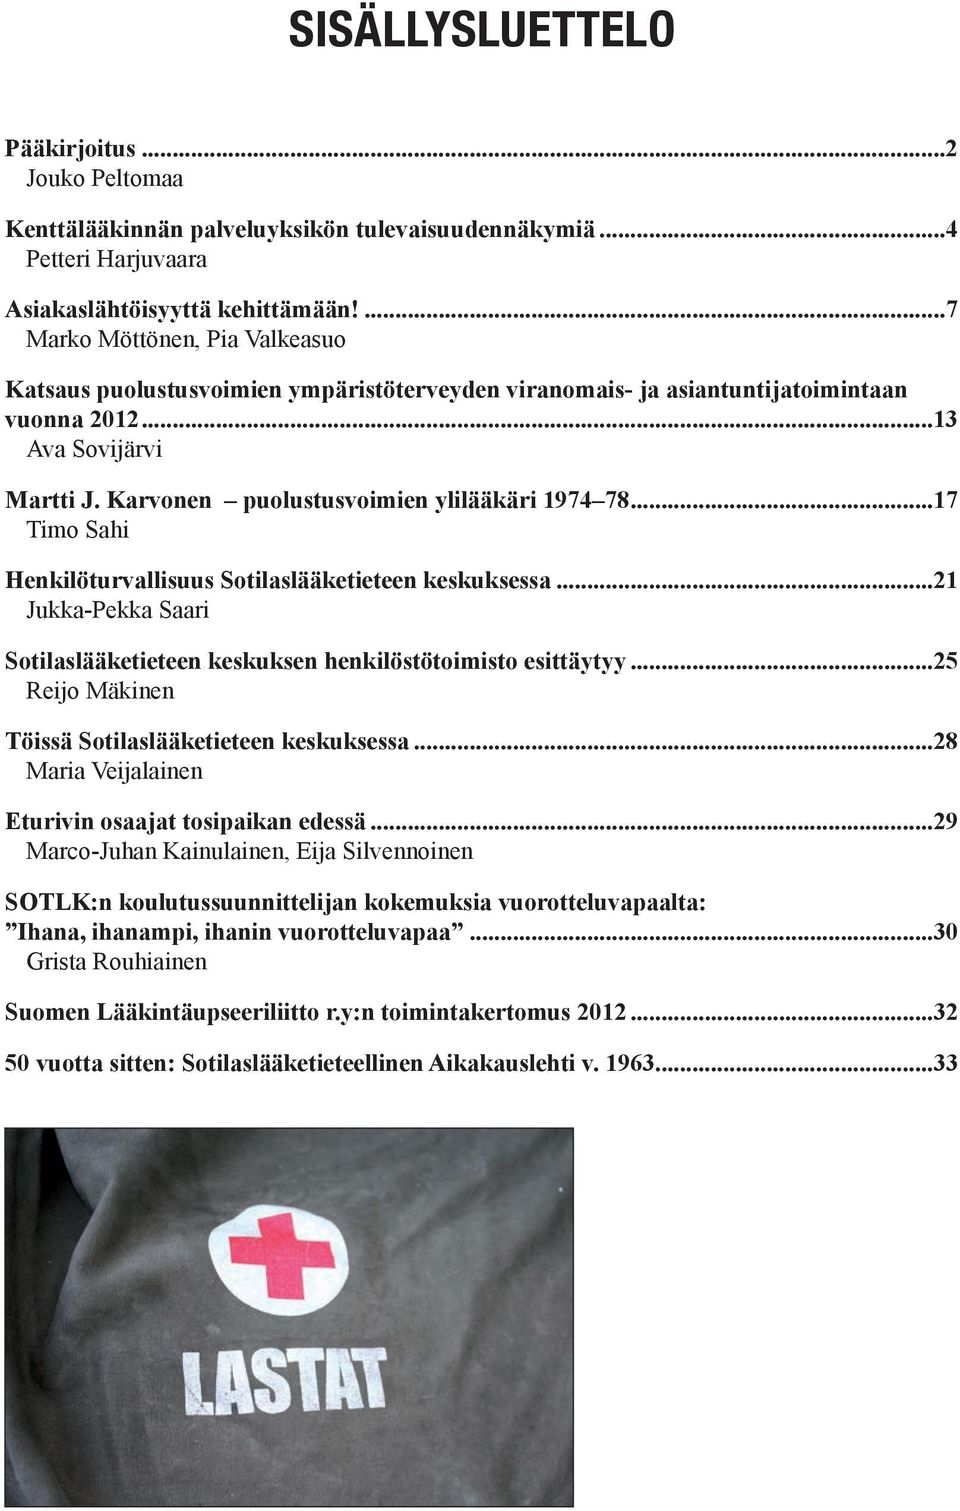 Karvonen puolustusvoimien ylilääkäri 1974 78...17 Timo Sahi Henkilöturvallisuus Sotilaslääketieteen keskuksessa...21 Jukka-Pekka Saari Sotilaslääketieteen keskuksen henkilöstötoimisto esittäytyy.